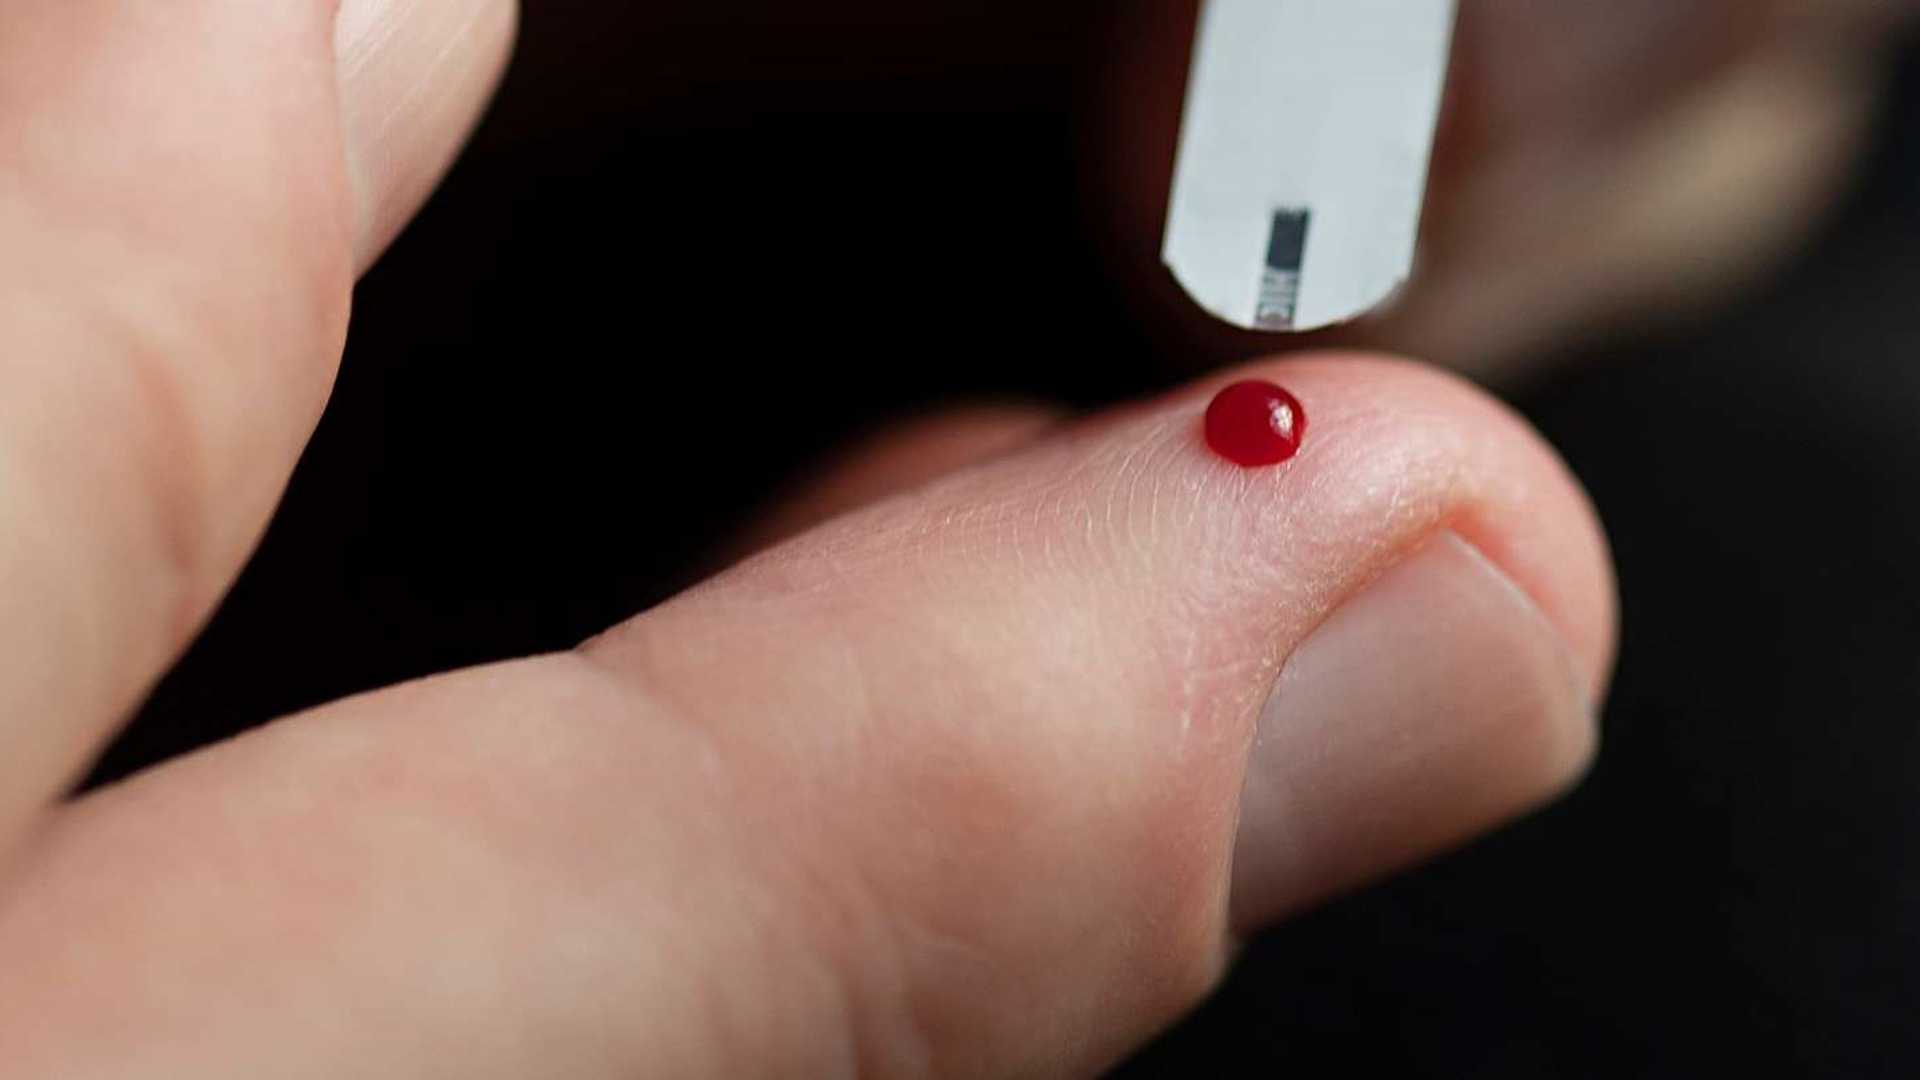 Billede af en bloddråbe på en finger